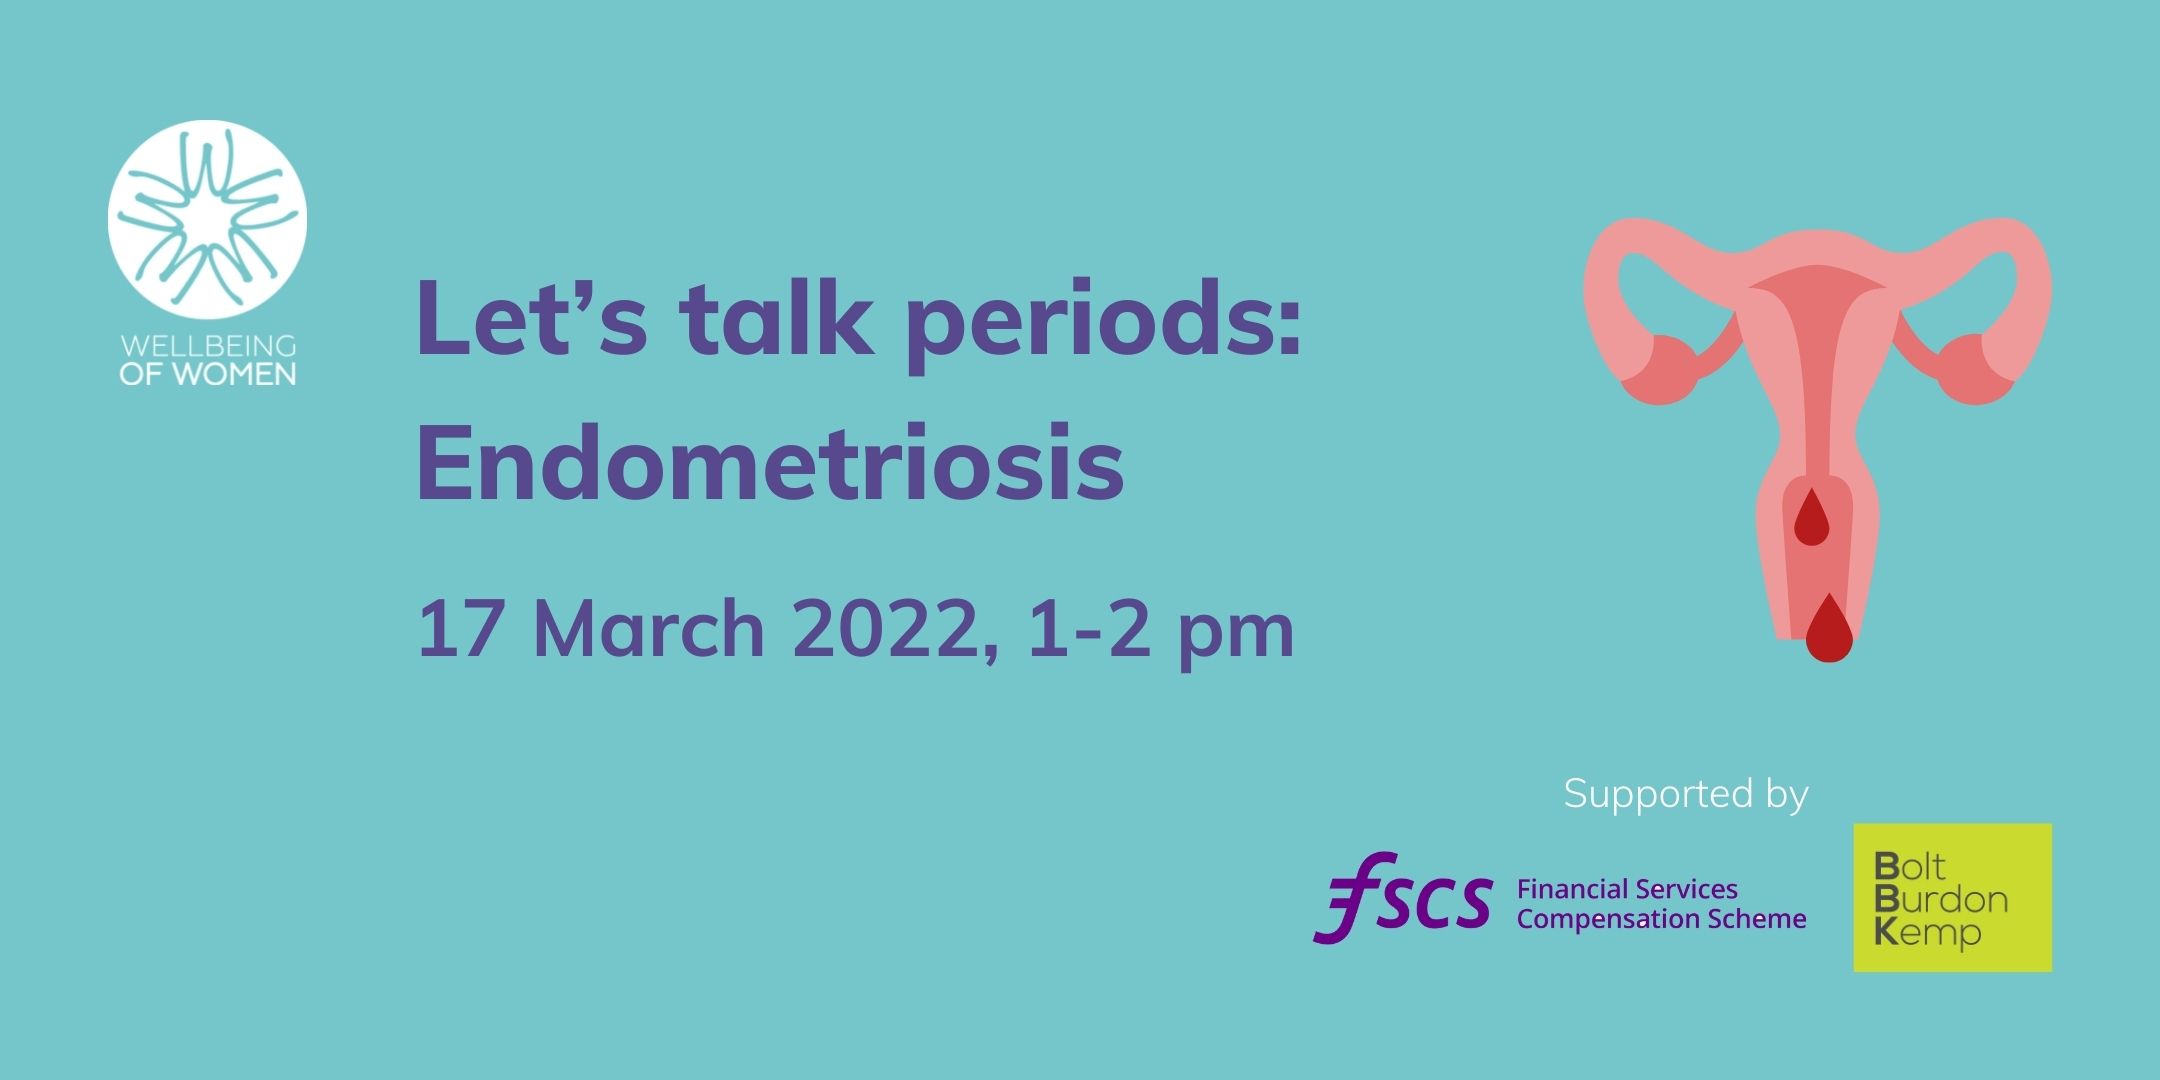 Let’s talk periods- Endometriosis